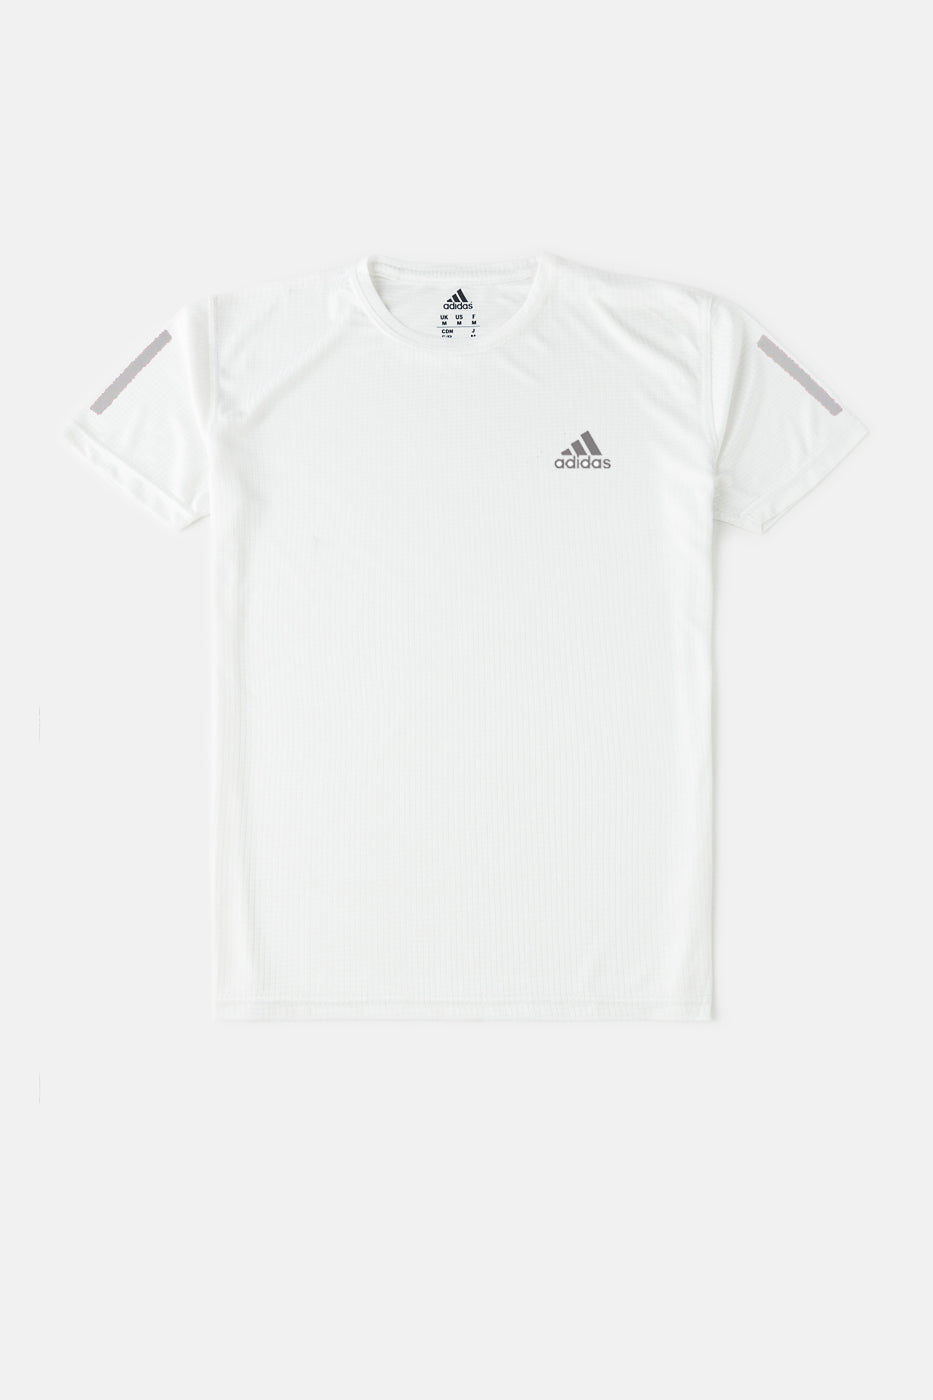 Premium Quality Dri-FIT Adidas T-Shirt White